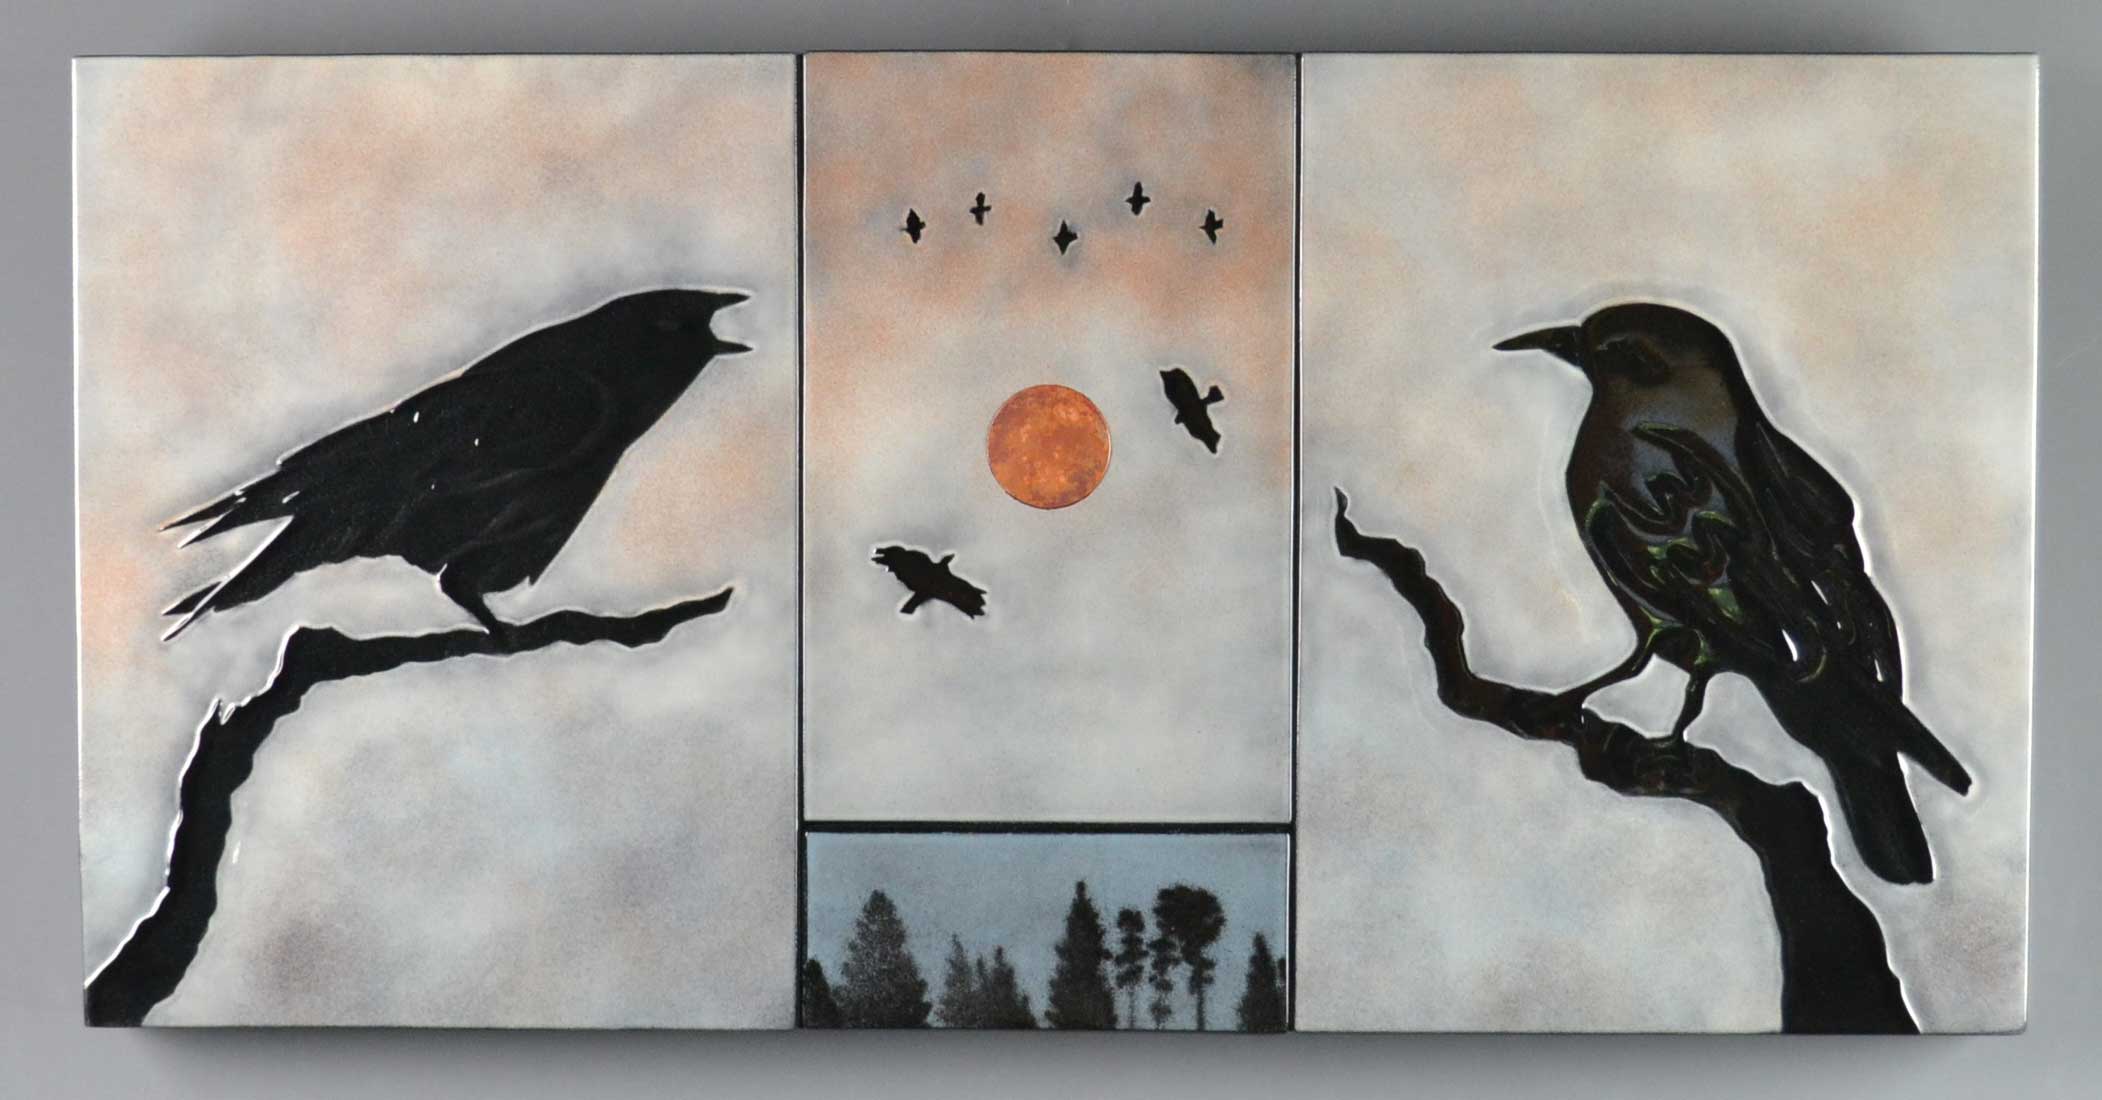 Gathering Crows